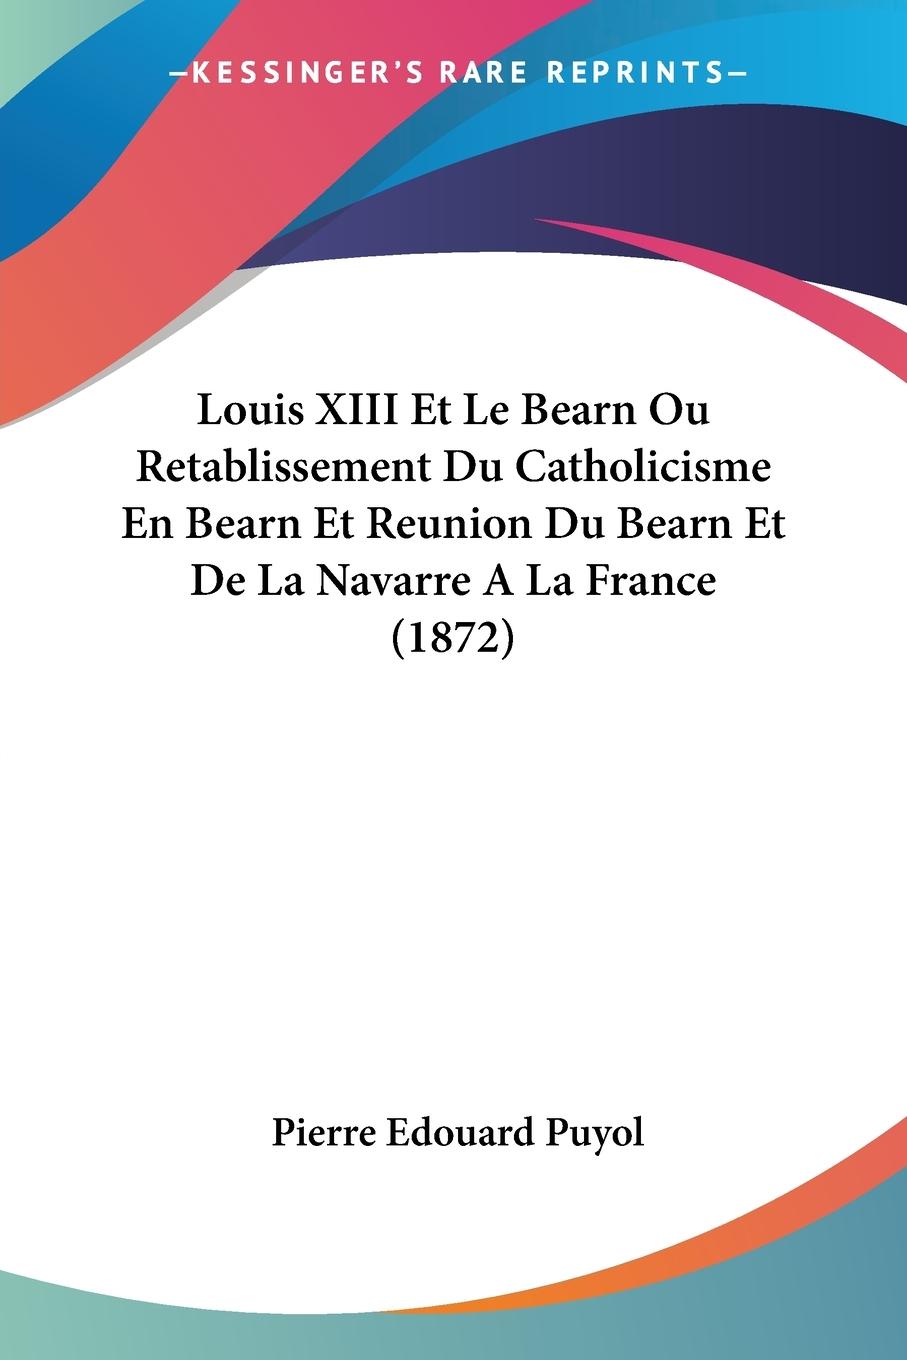 Louis XIII Et Le Bearn Ou Retablissement Du Catholicisme En Bearn Et Reunion Du Bearn Et De La Navarre A La France (1872) - Puyol, Pierre Edouard